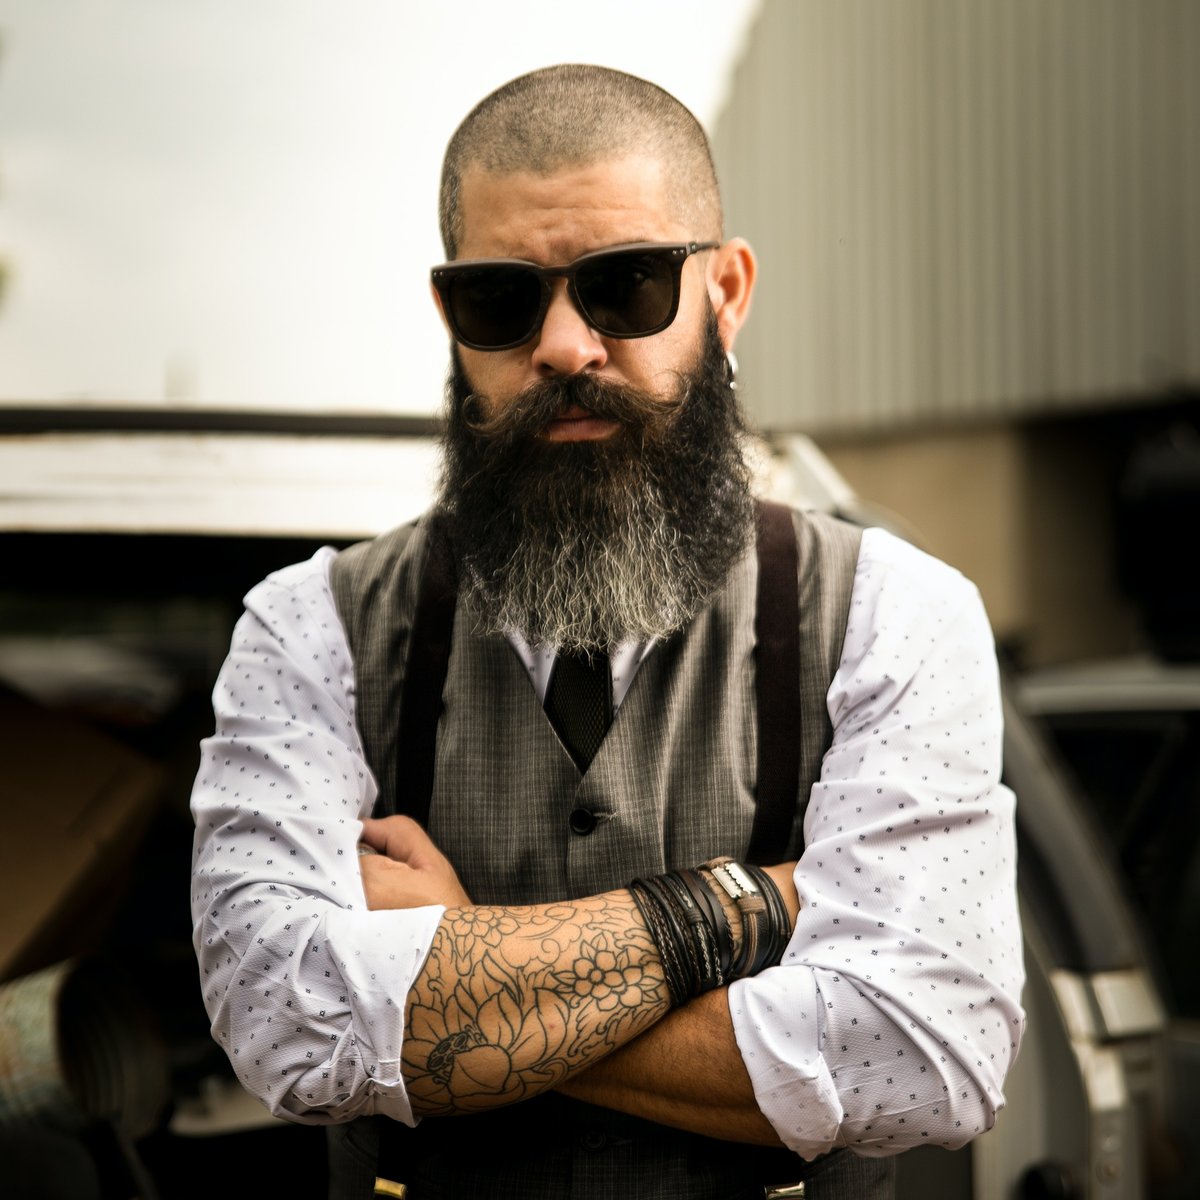 Men's Beard Styles - Celebrity Beard and Mustache Styles